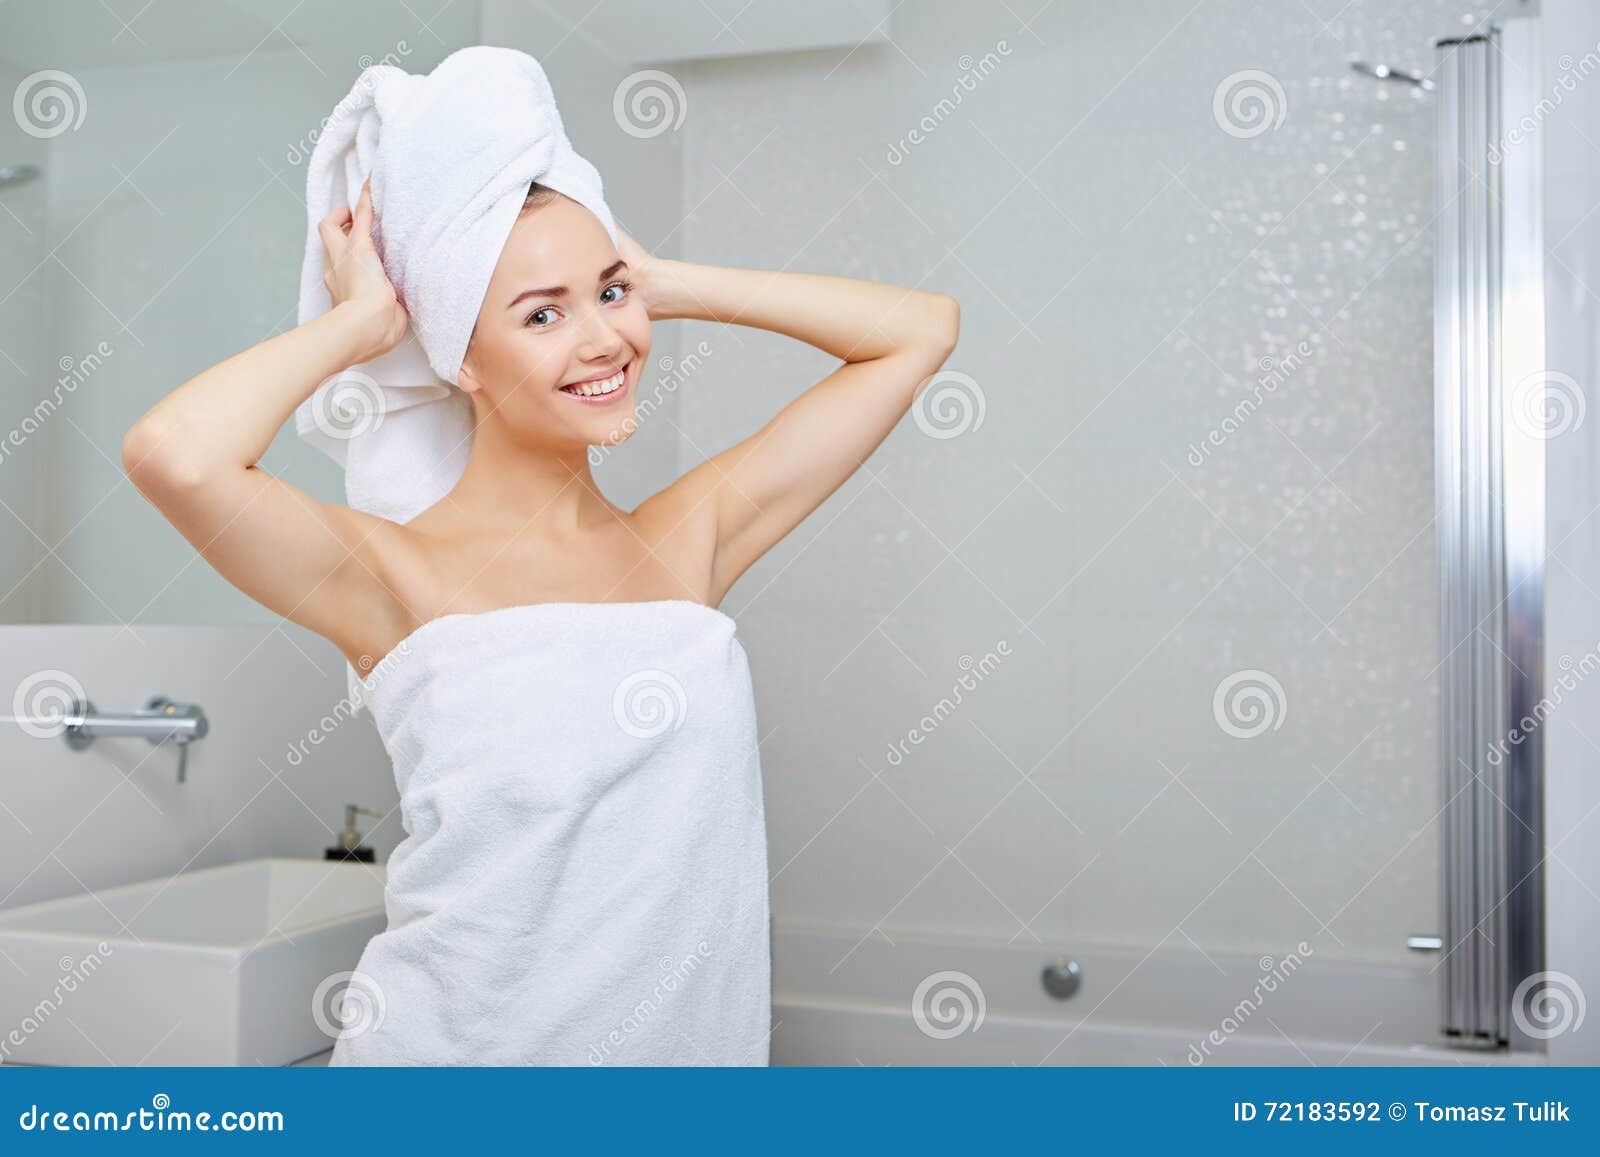 Ходит в полотенце. Девушка в белом полотенце. Красивая девушка в полотенце. Девушка в Банном полотенце. Девушка с полотенцем на голове.